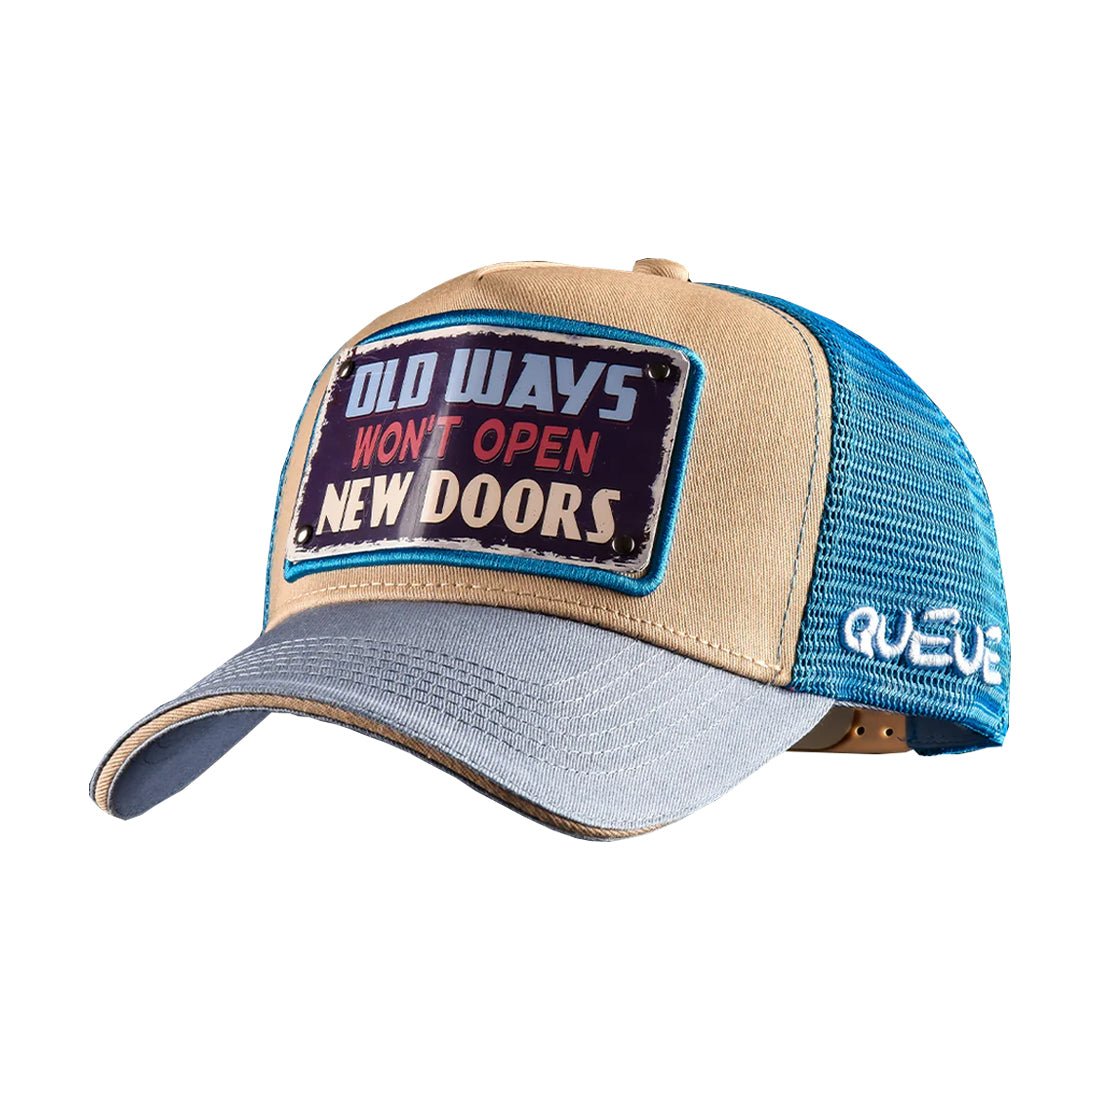 Queue Caps Old Ways Cap - Beige & Light Blue - قبعة - Store 974 | ستور ٩٧٤